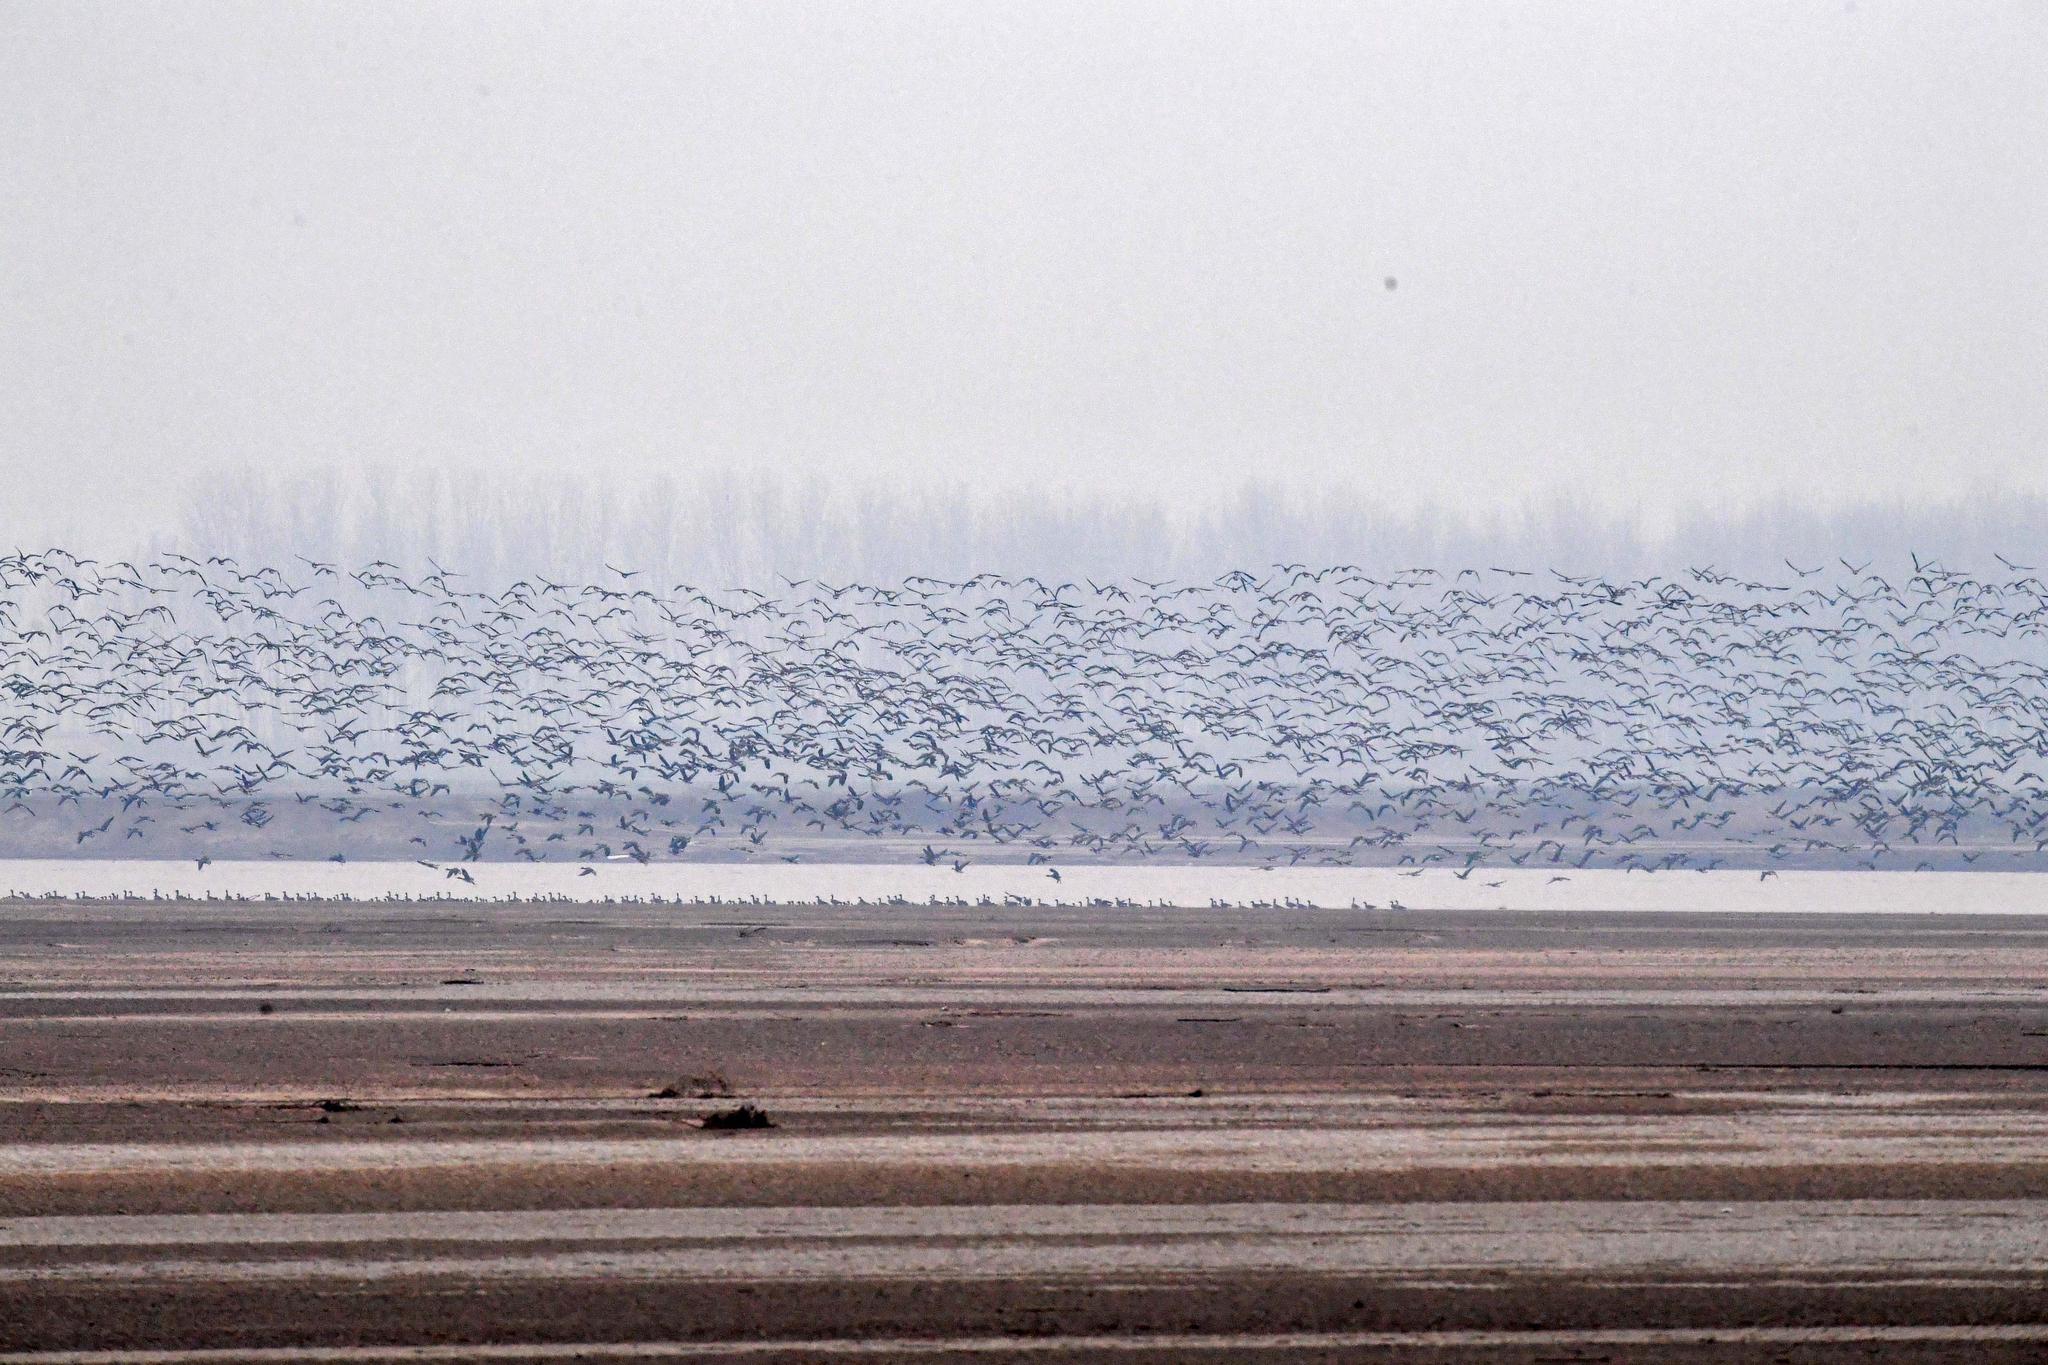 这是12月25日在河南省长垣县境内的黄河湿地拍摄的大雁。